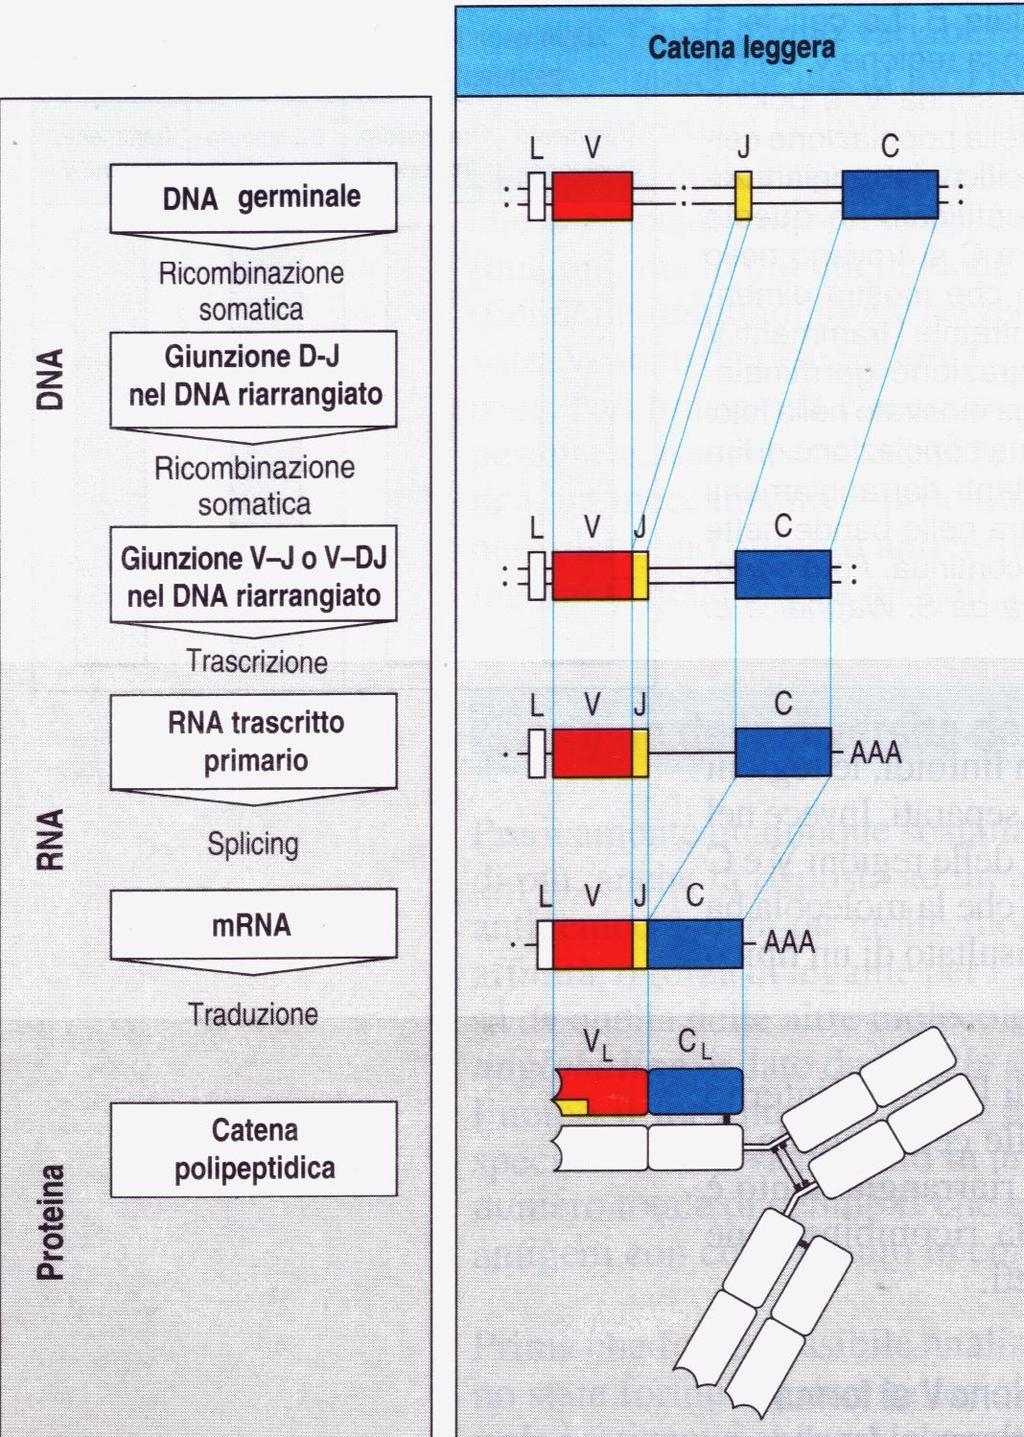 Il repertorio anticorpale: la parte variabile delle immunoglobuline 2 segmenti genici costituiscono il codice della parte variabile della cat.